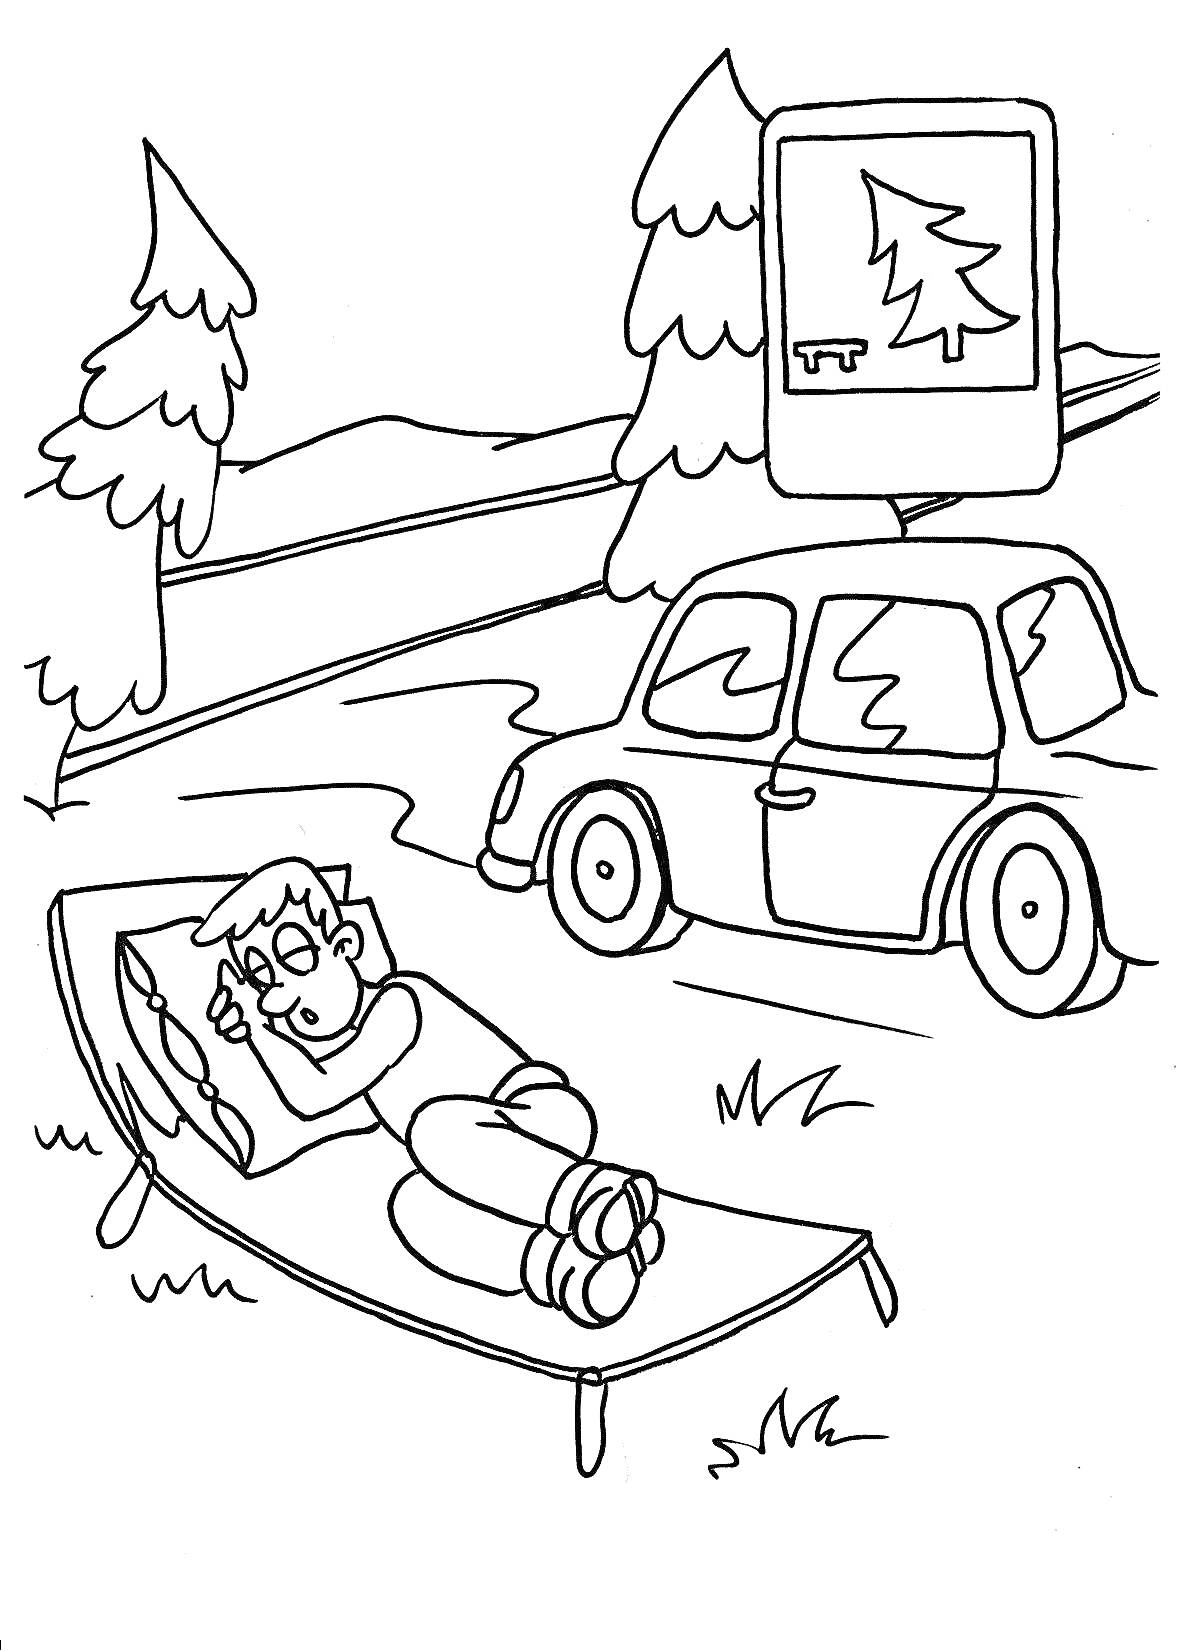 Раскраска Человек на раскладушке на природе возле автомобиля, рядом с дорожным знаком стоянки для отдыха